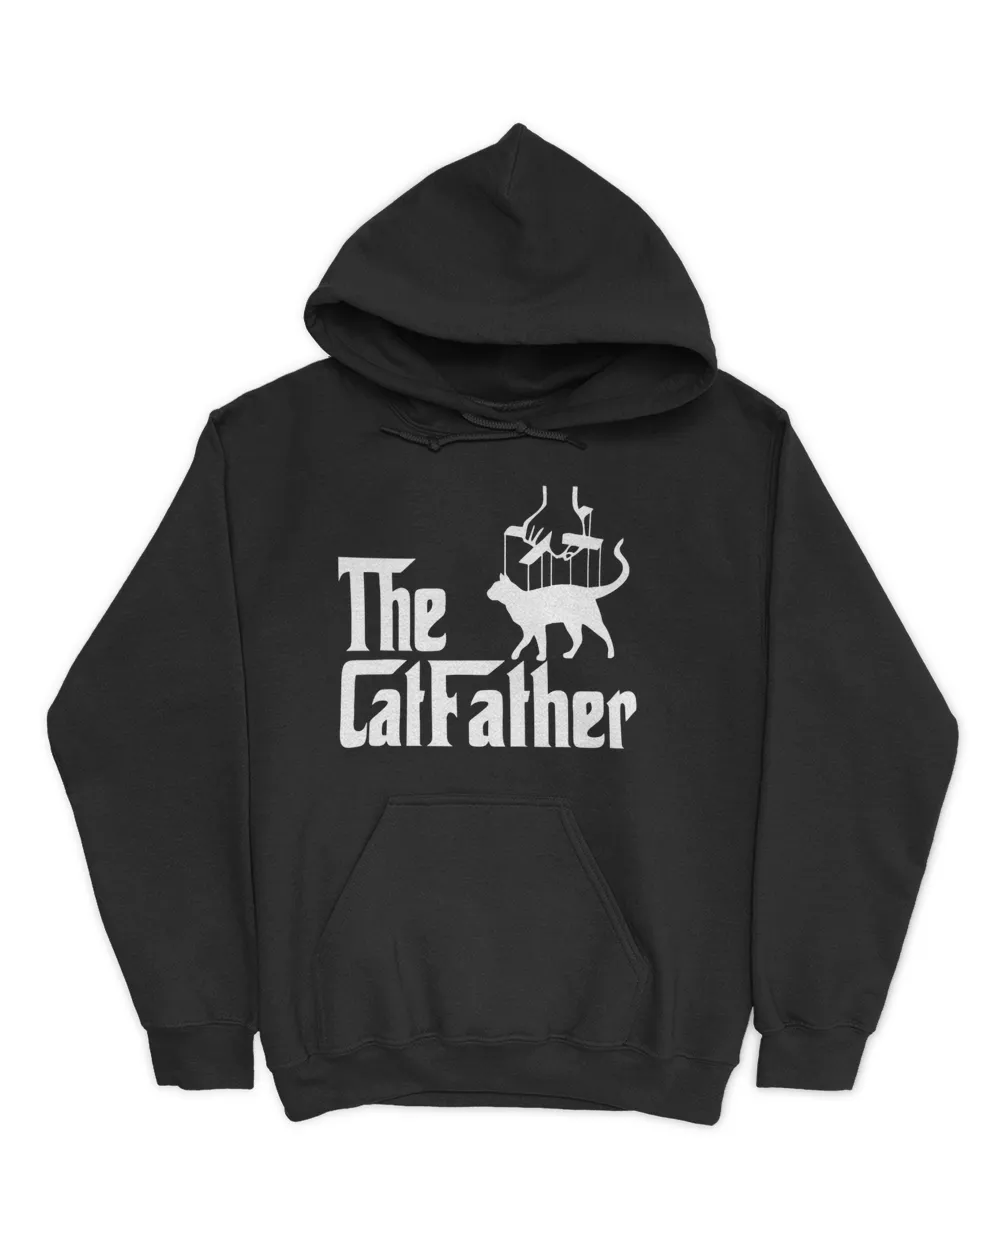 The CatFather QTCAT161222A14